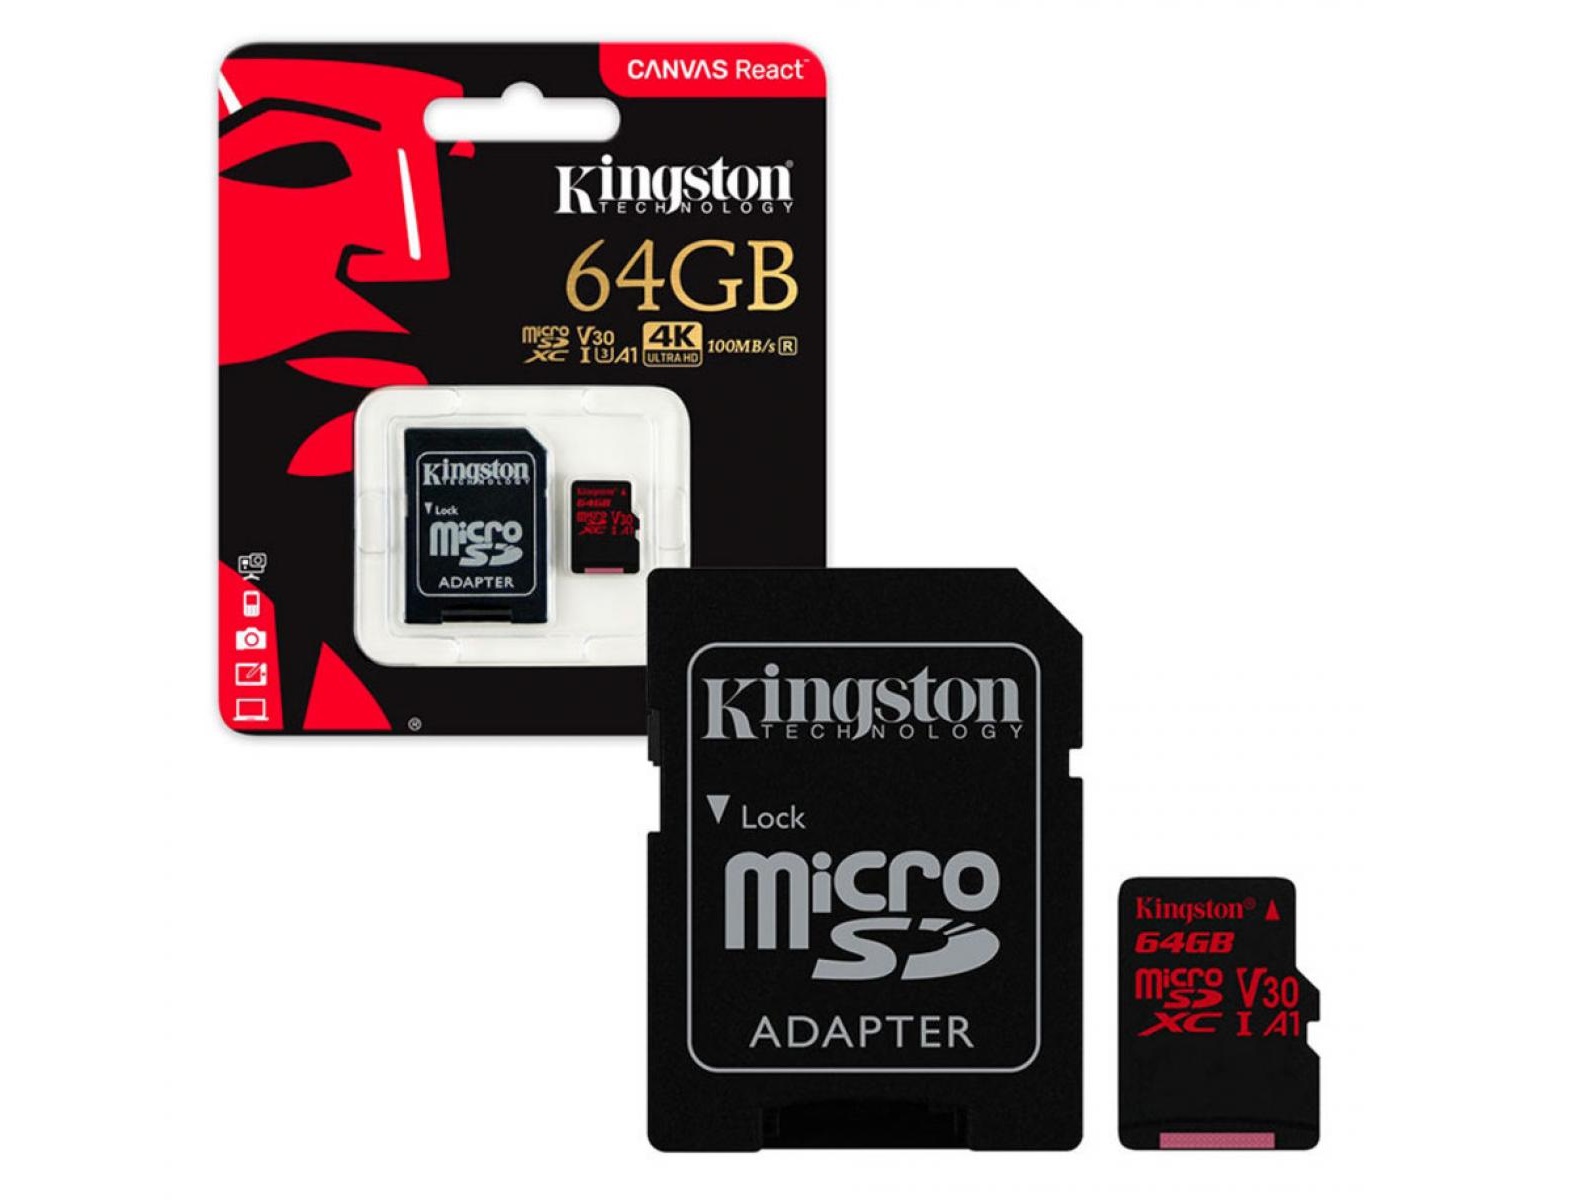 Кингстон микро. Карта памяти 128 ГБ Micro Kingston. Kingston MICROSD 128gb. MICROSD Kingston 64gb class10 UHS-I 100mbs + Adapter. Карта памяти MICROSD Kingston sdcg3 64gb.